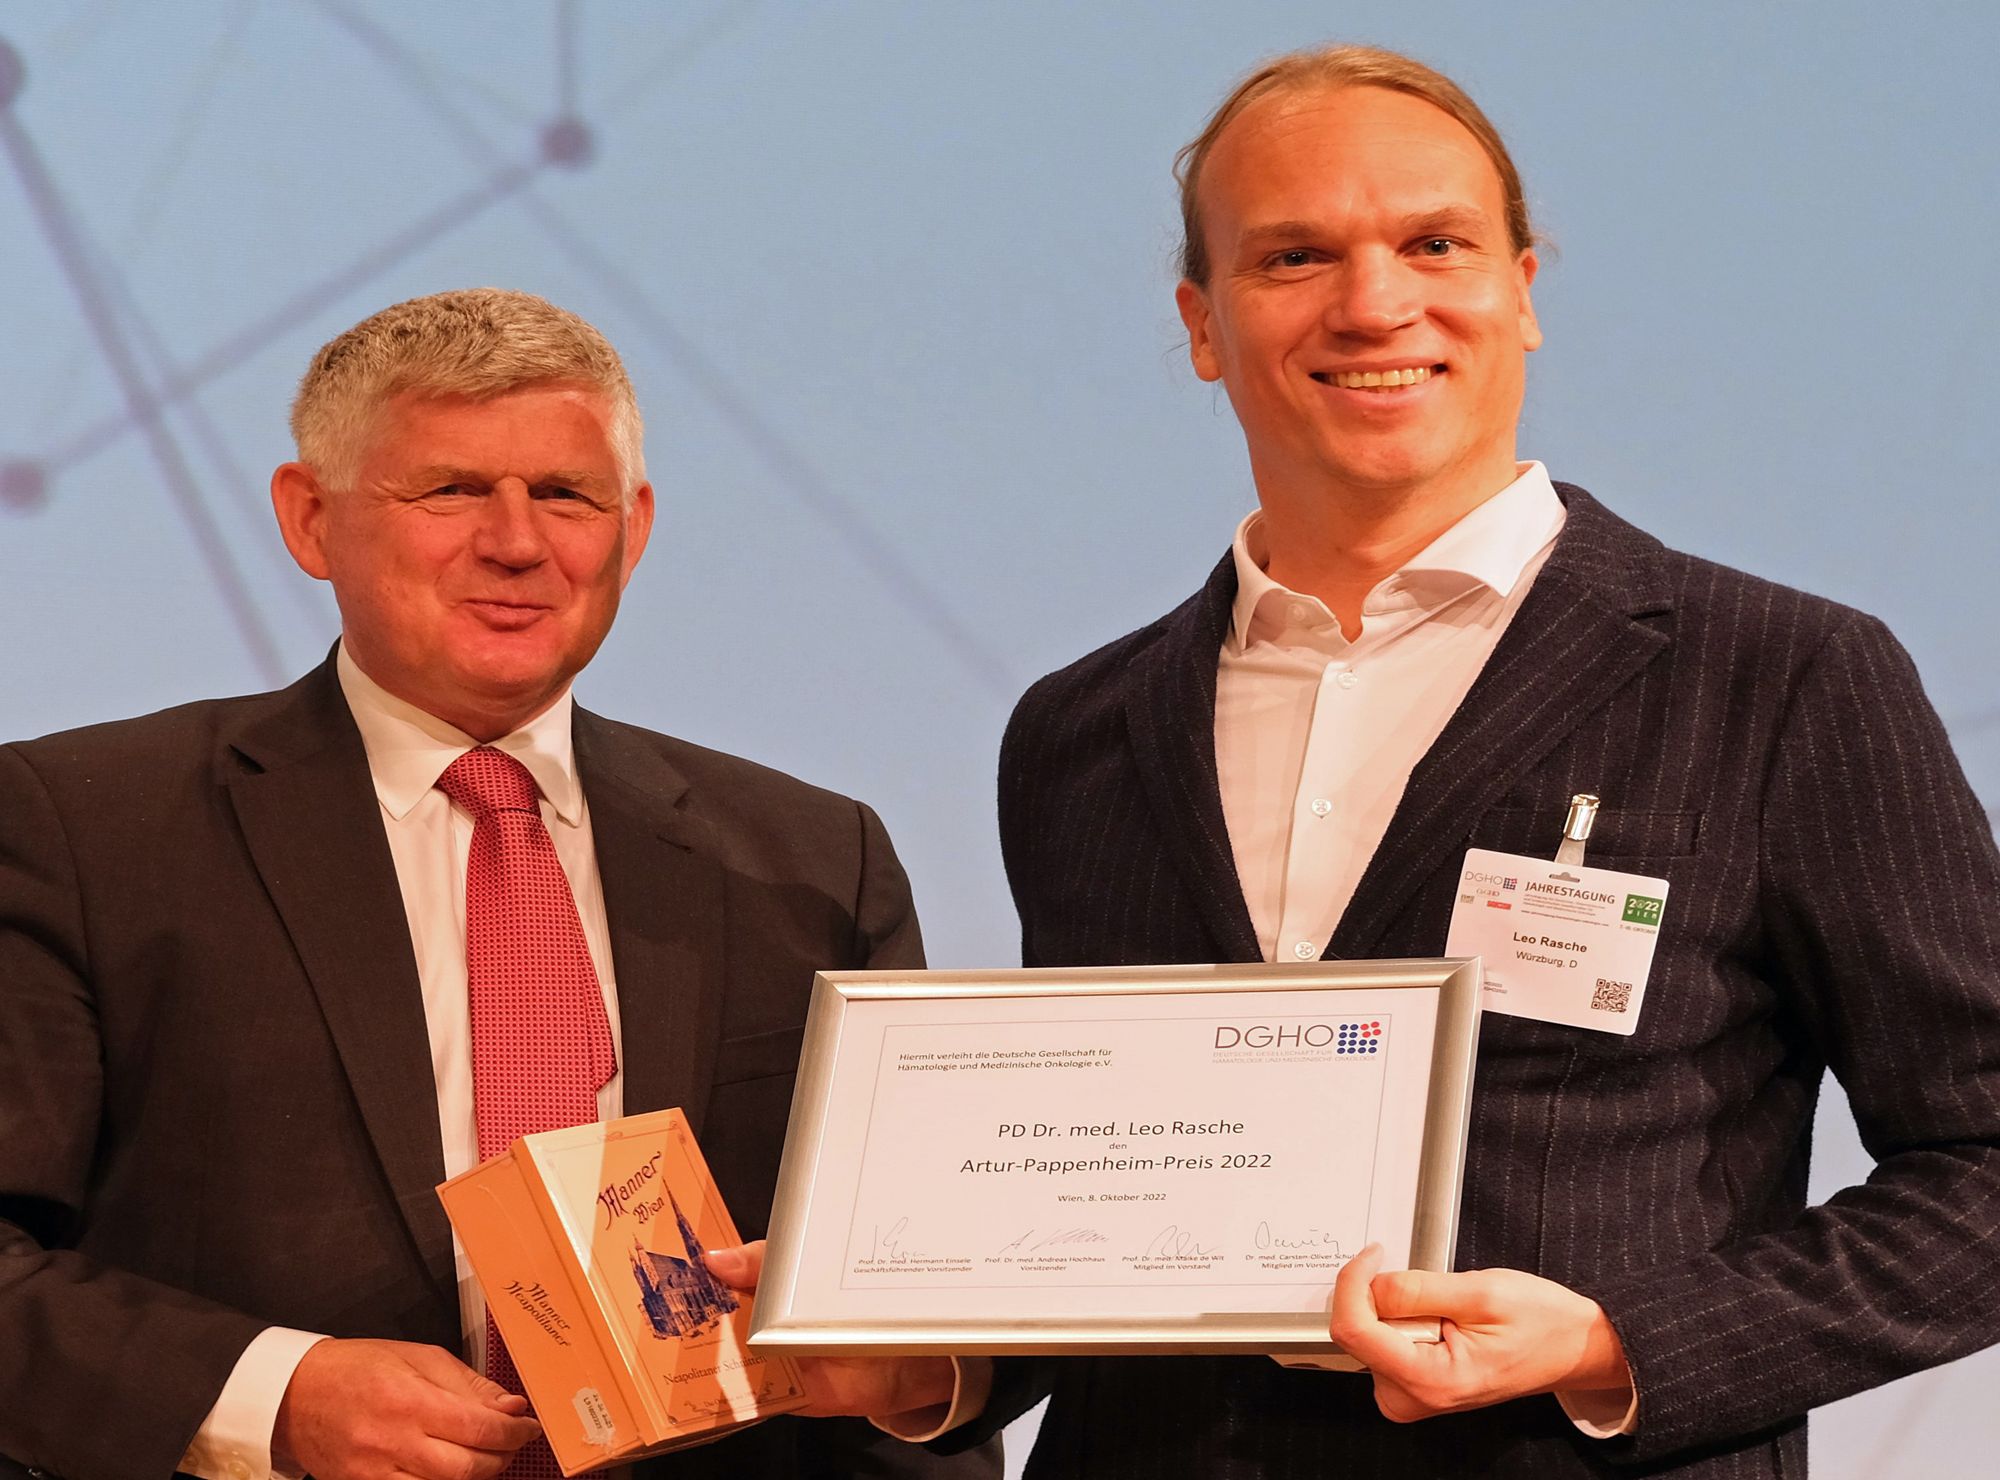 Prof. Dr. Andreas Hochhaus, der Vorsitzende der Deutschen Gesellschaft für Hämatologie und Onkologie, überreichte den Artur-Pappenheim-Preis 2022 an PD Dr. Leo Rasche (rechts).